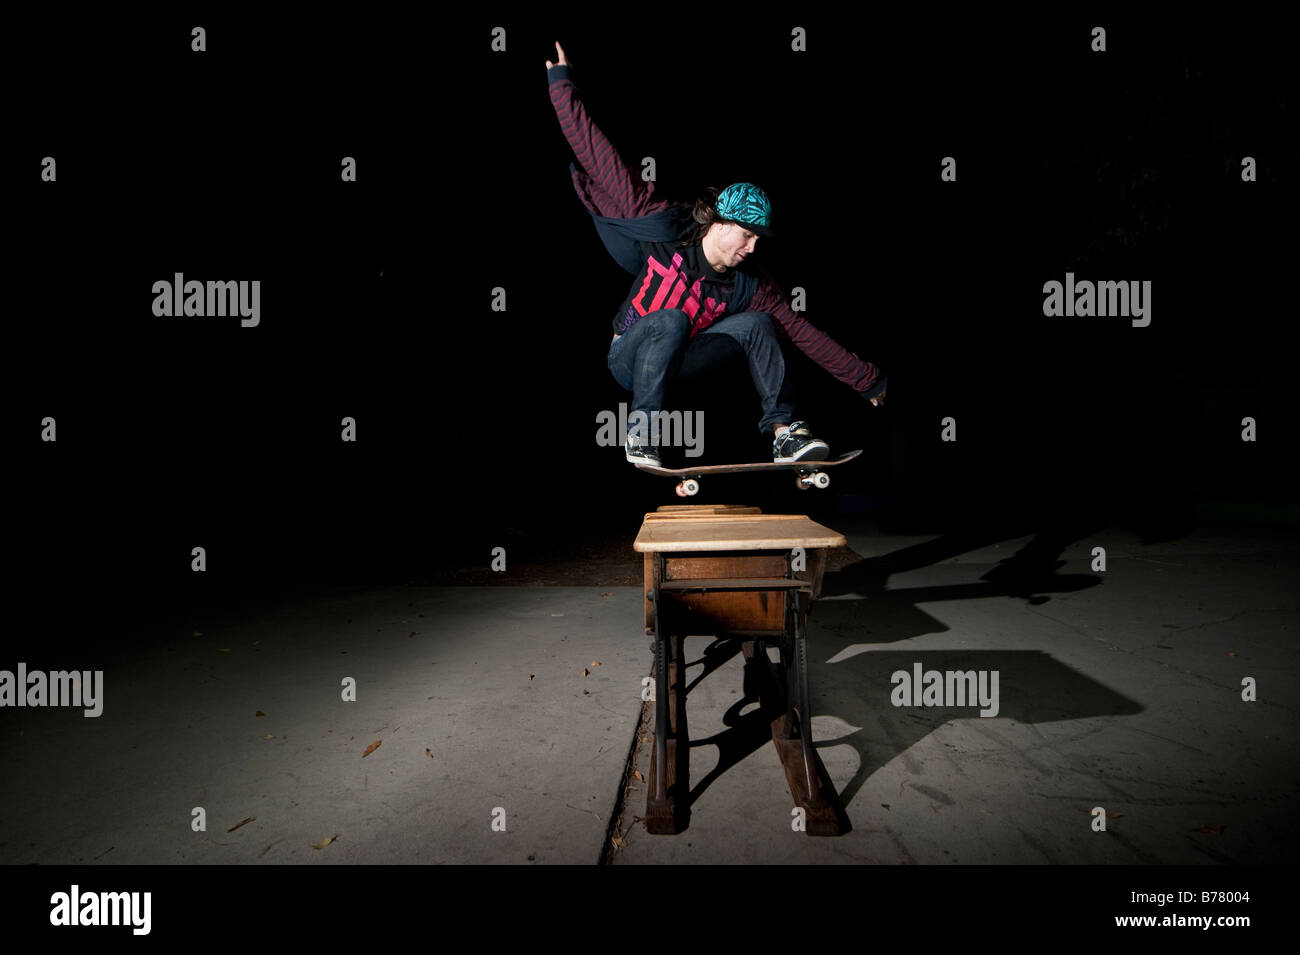 Skateboarder jumping over desks Stock Photo